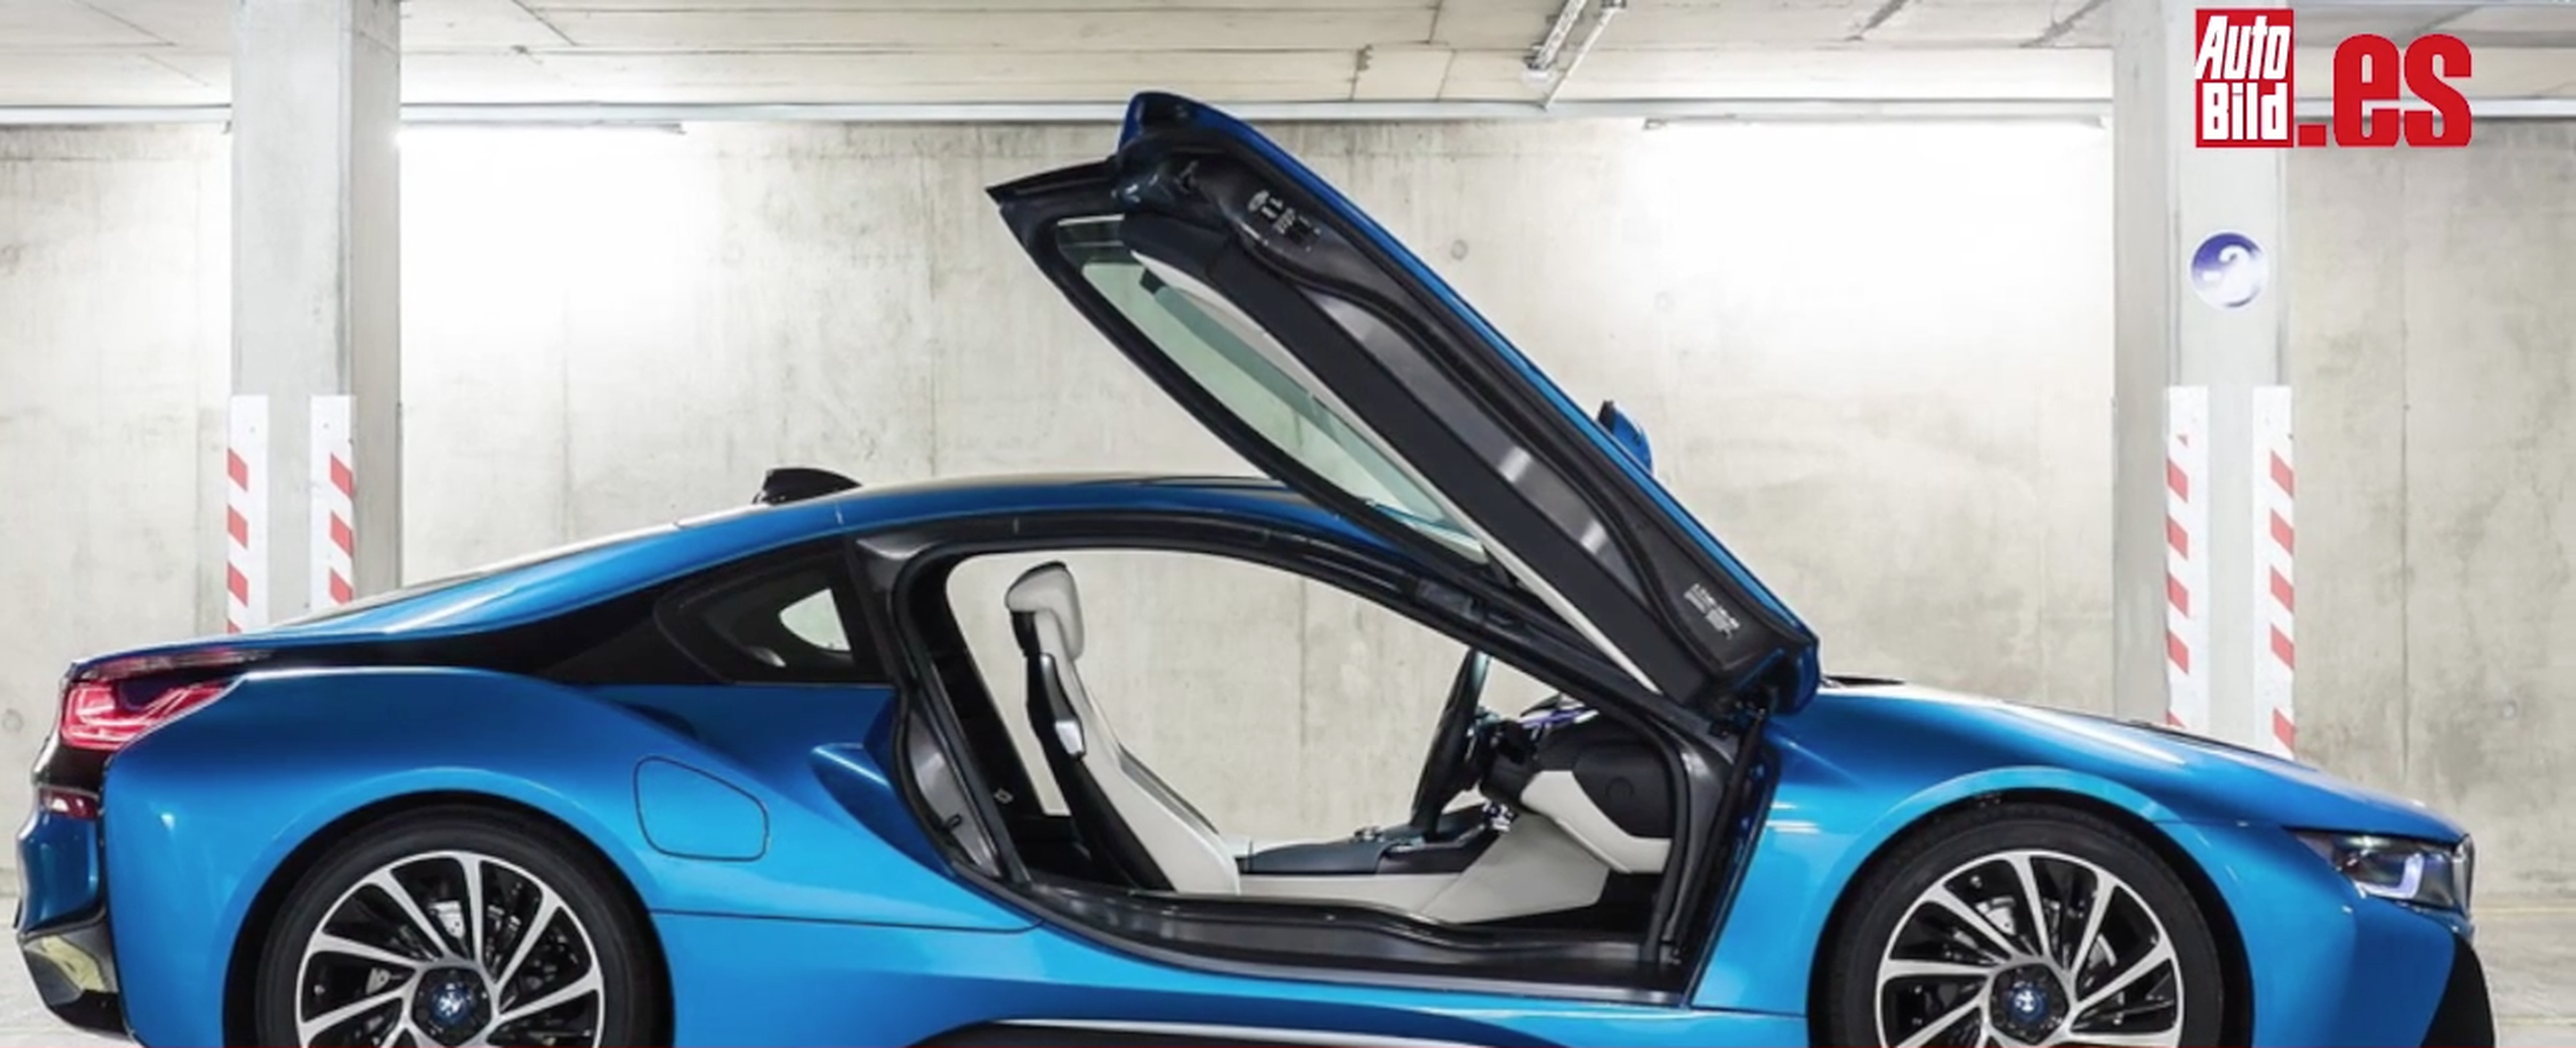 VÍDEO: Cinco detalles del BMW i8 que te enamorarán